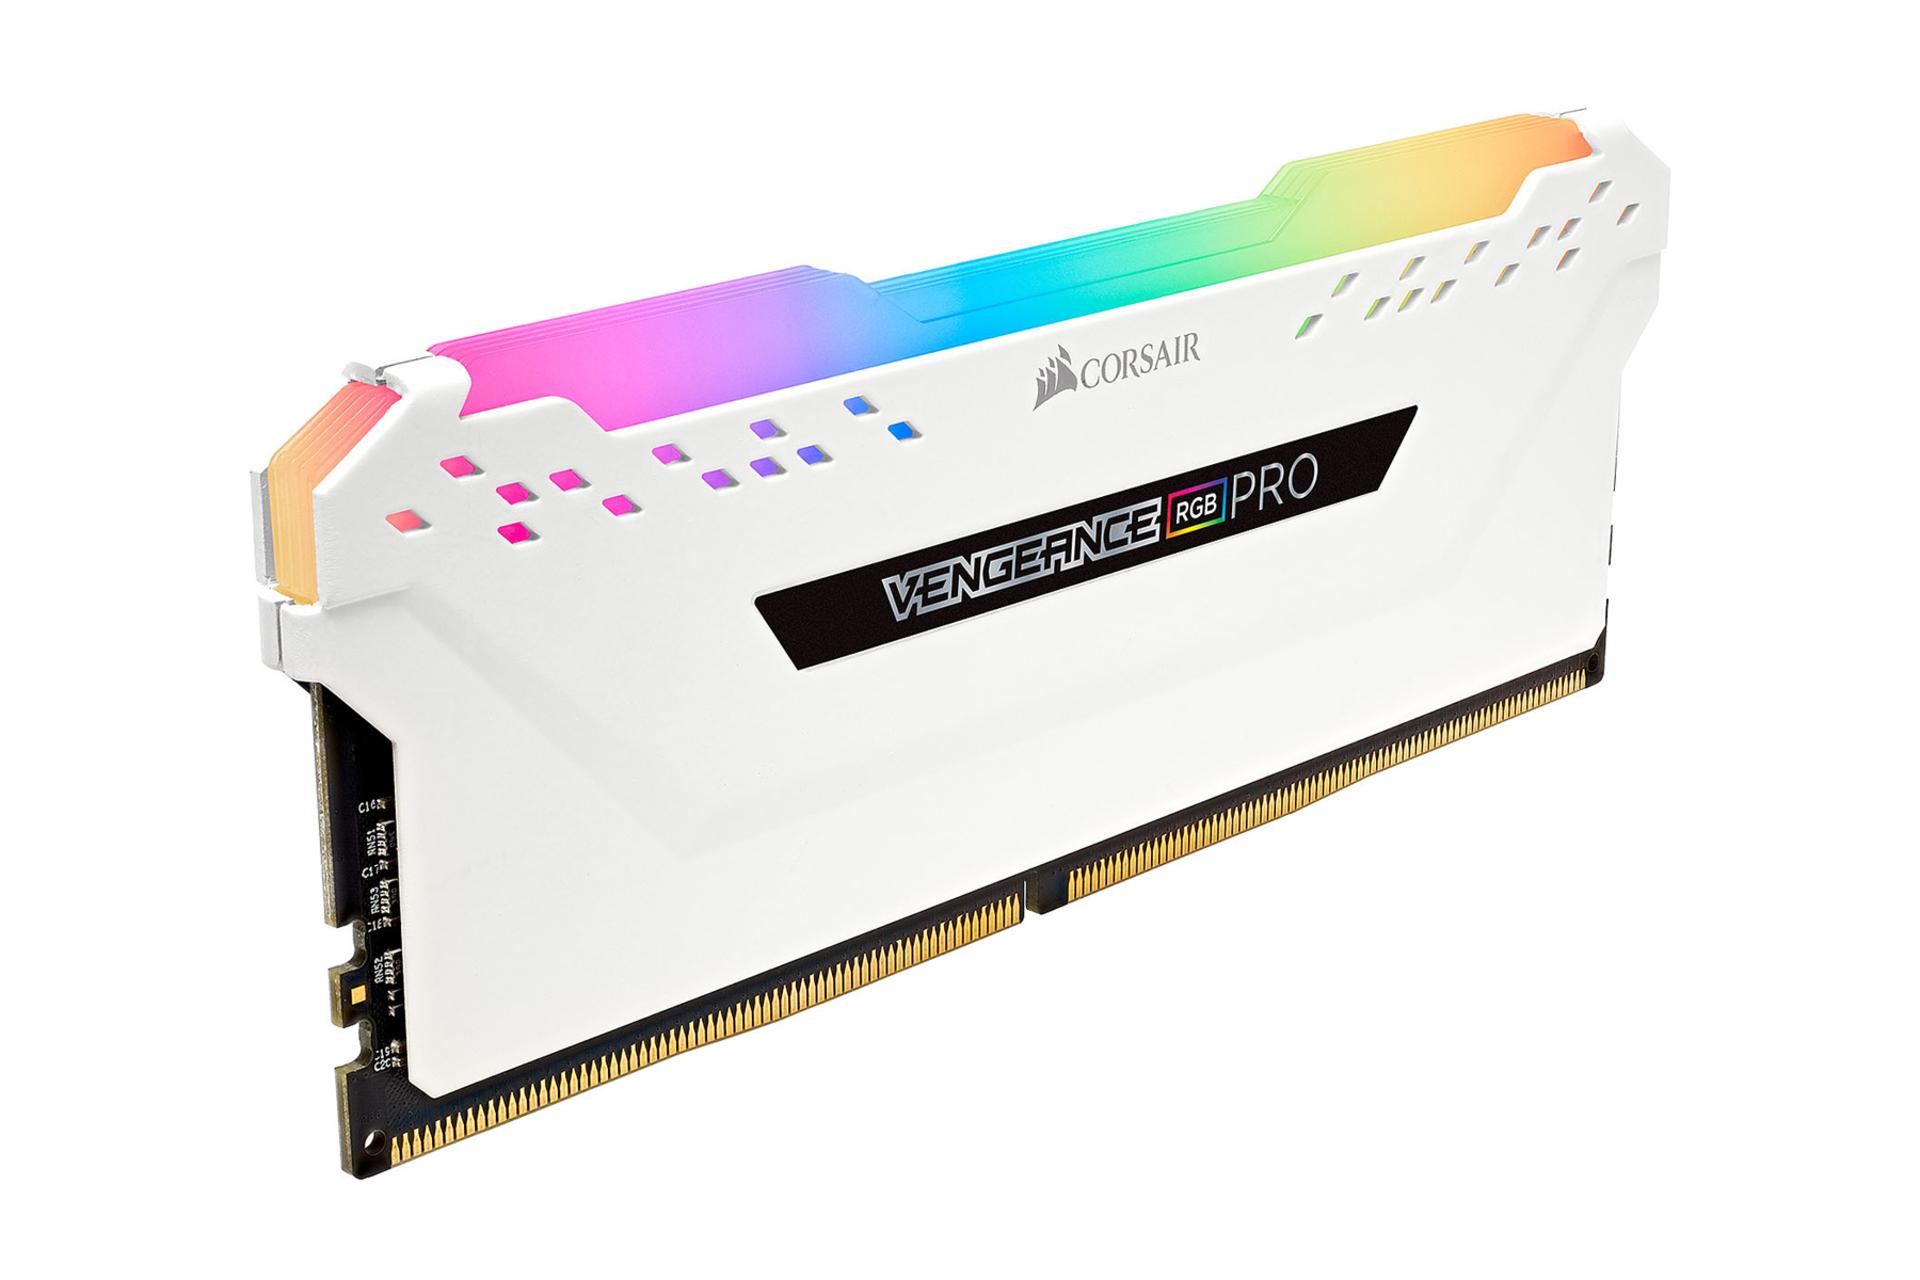 نمای کناری کورسیر VENGEANCE RGB PRO ظرفیت 8 گیگابایت  از نوع DDR4-3000